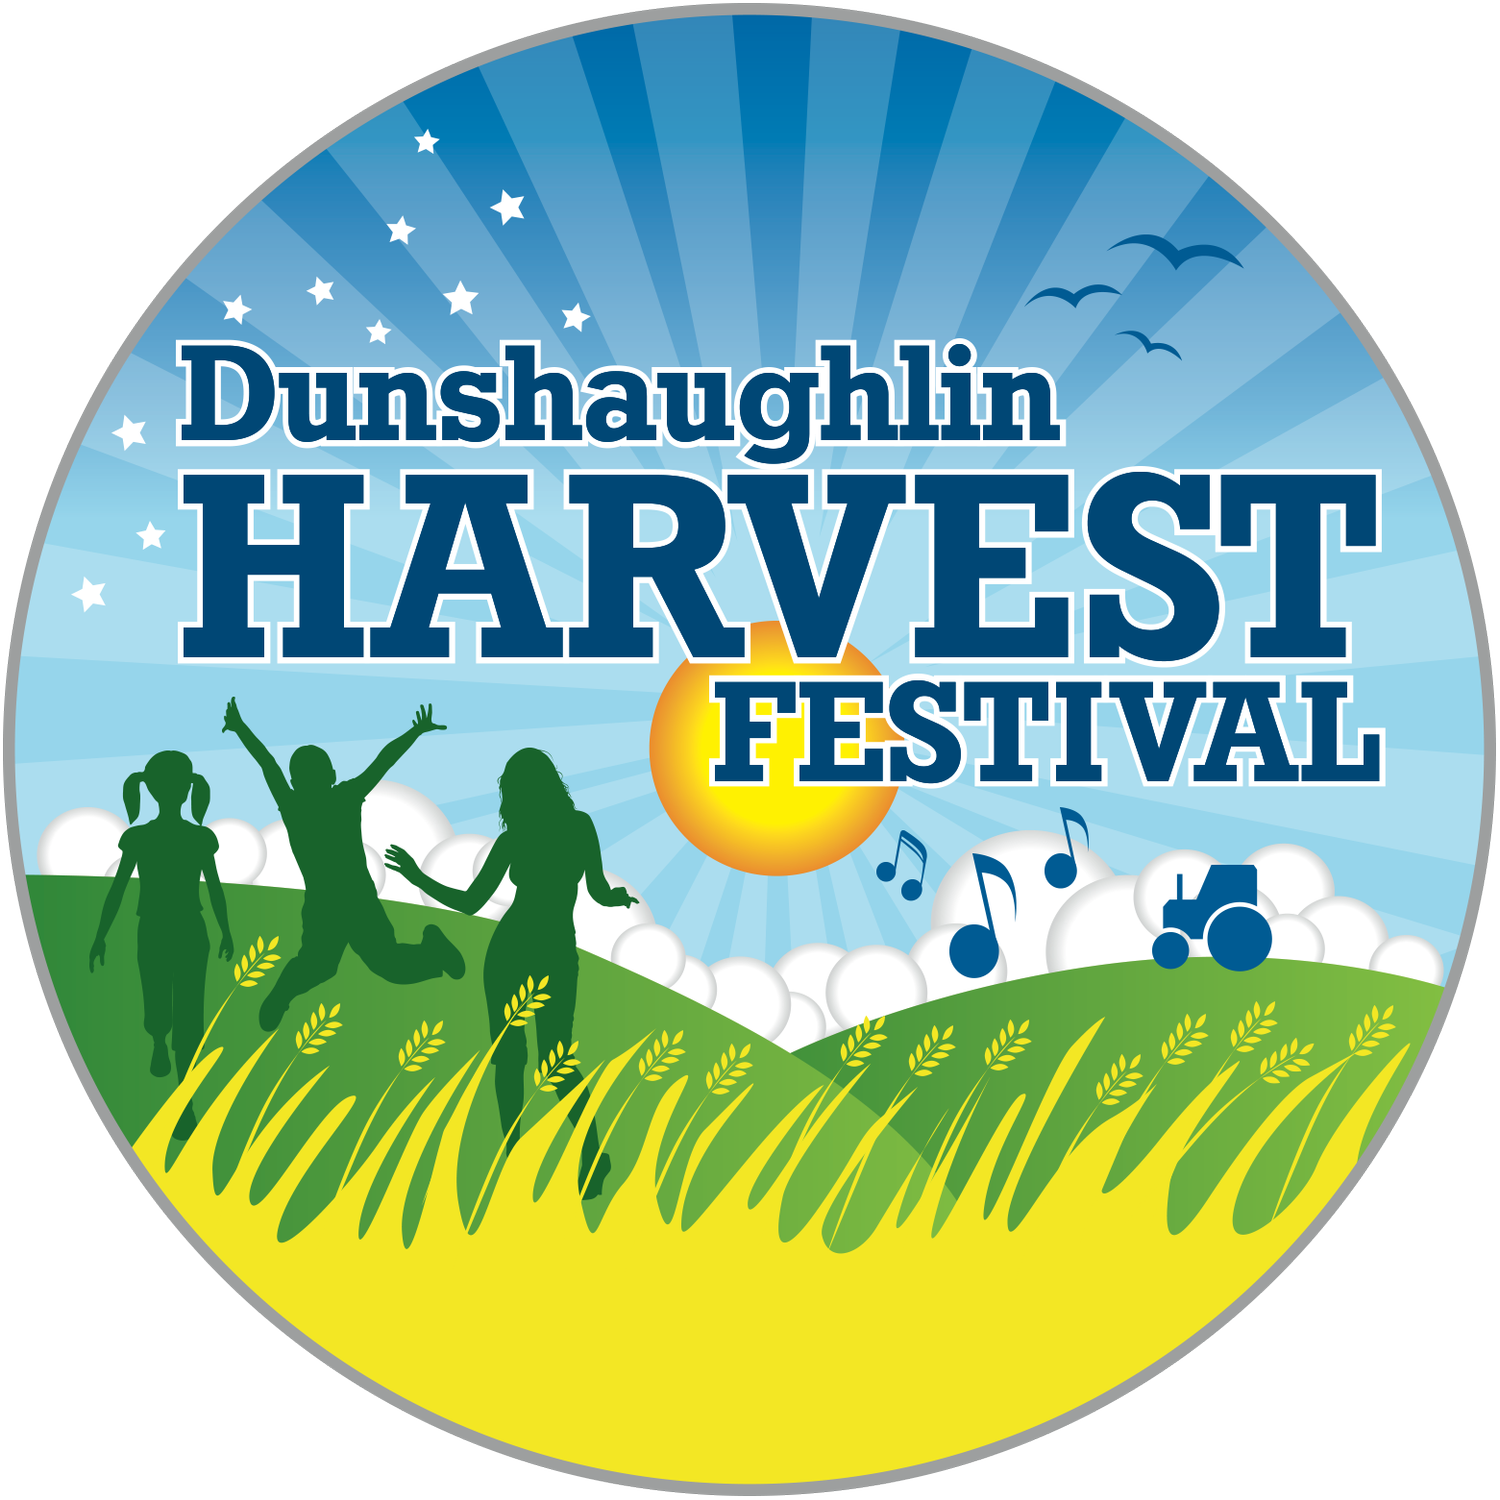 Dunshaughlin Harvest Festival